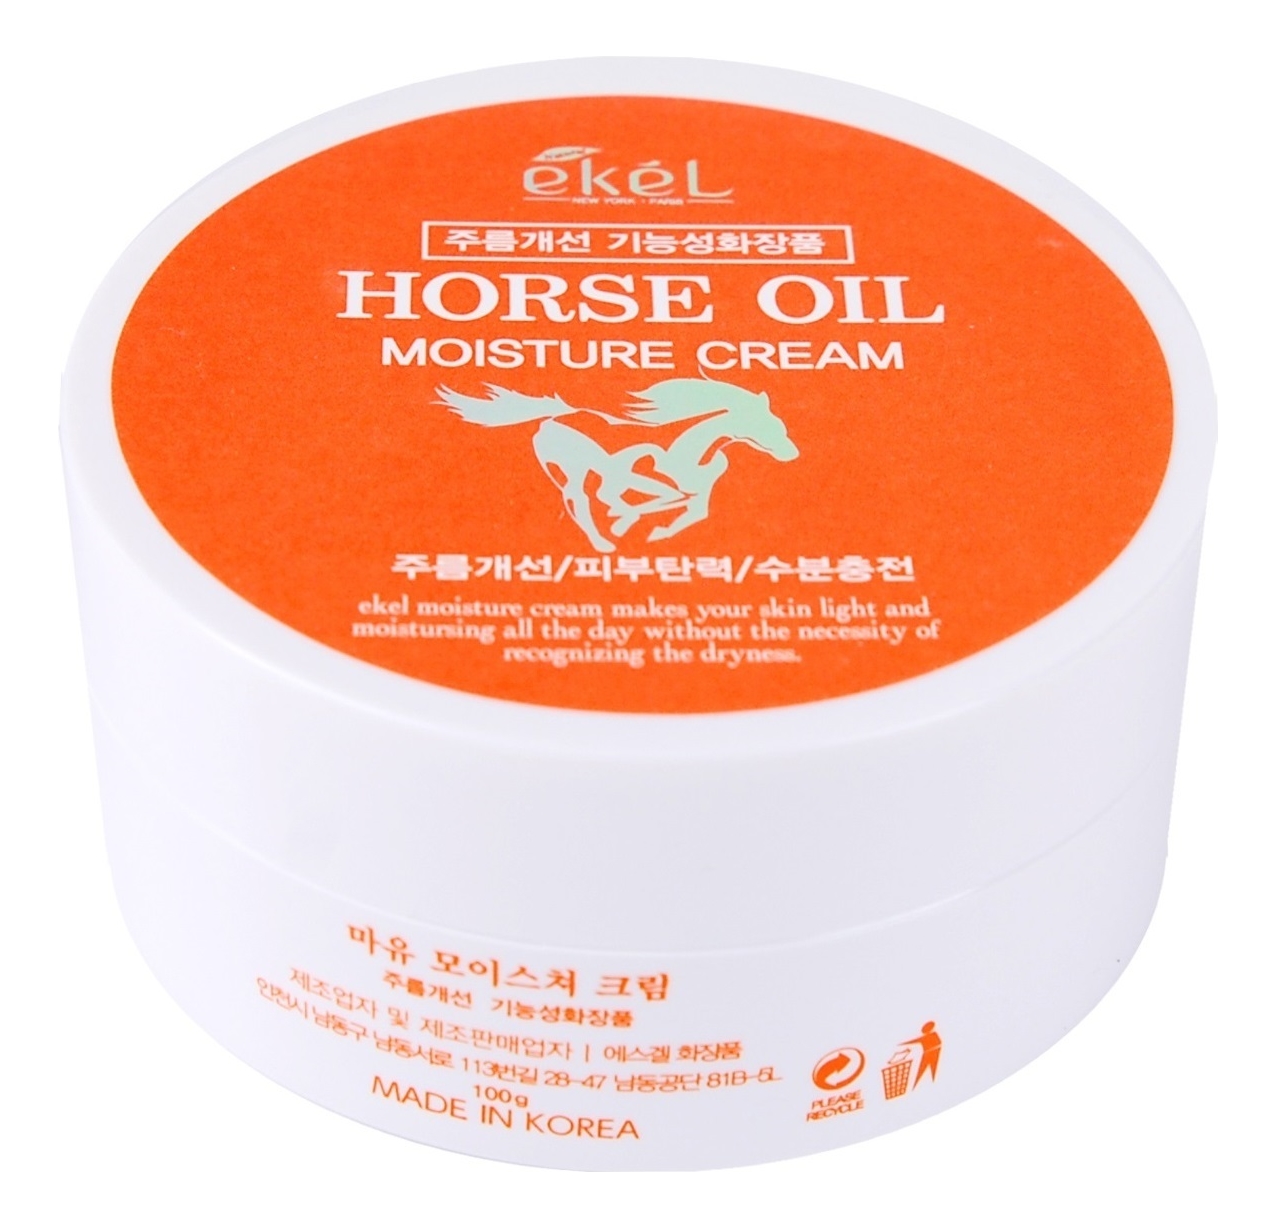 Увлажняющий крем для лица с экстрактом лошадиного жира Horse Oil Moisture Cream 100г roland moisture skin cream horse oil